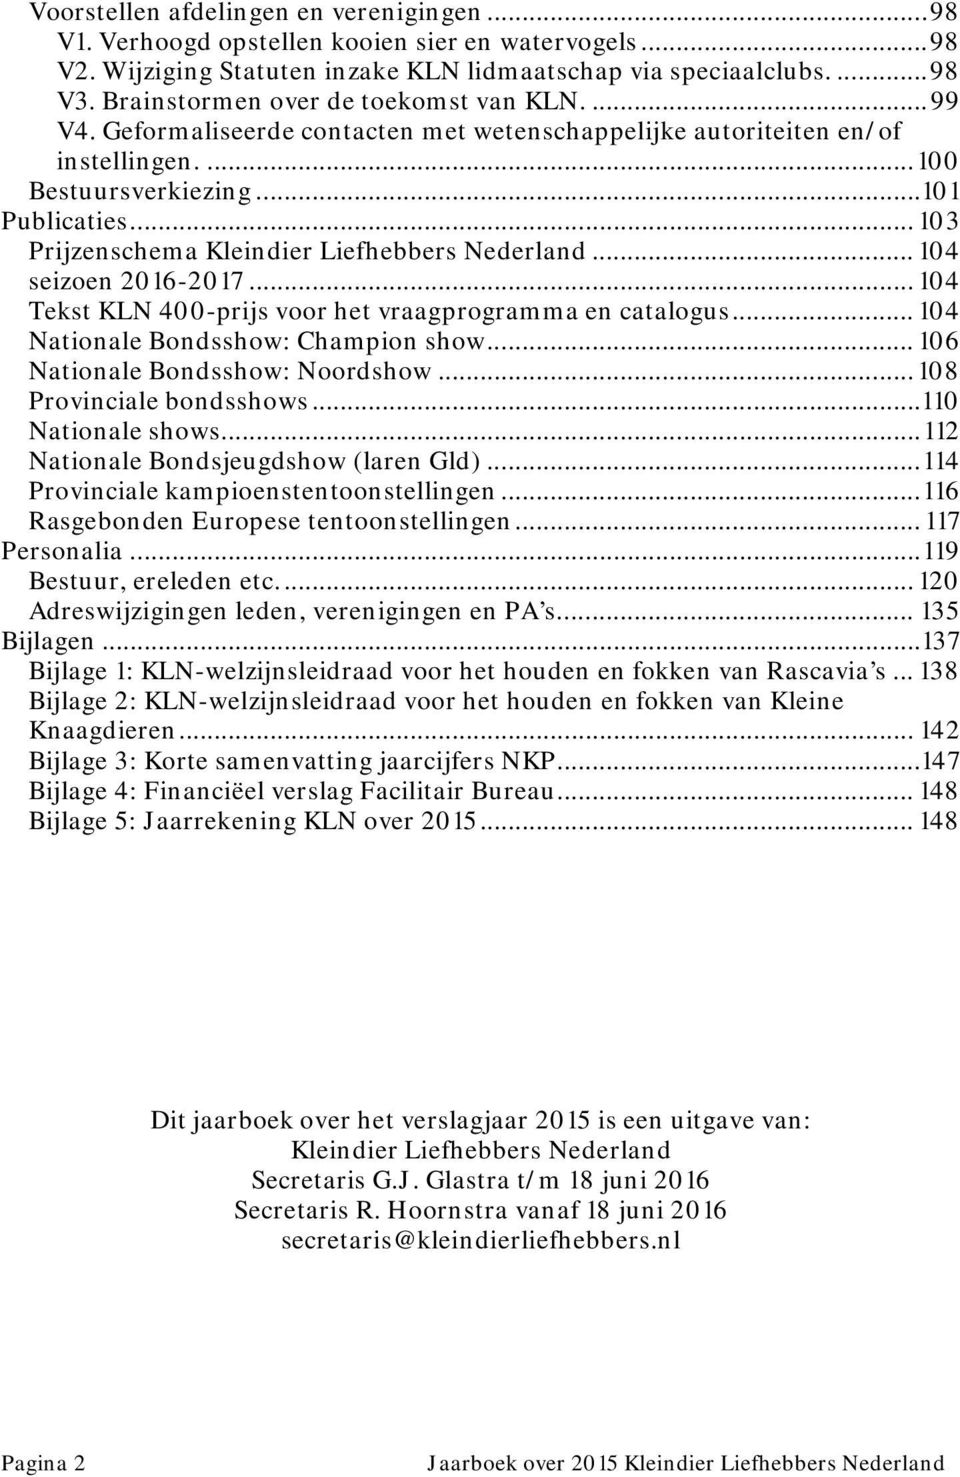 .. 103 Prijzenschema Kleindier Liefhebbers Nederland... 104 seizoen 2016-2017... 104 Tekst KLN 400-prijs voor het vraagprogramma en catalogus... 104 Nationale Bondsshow: Champion show.